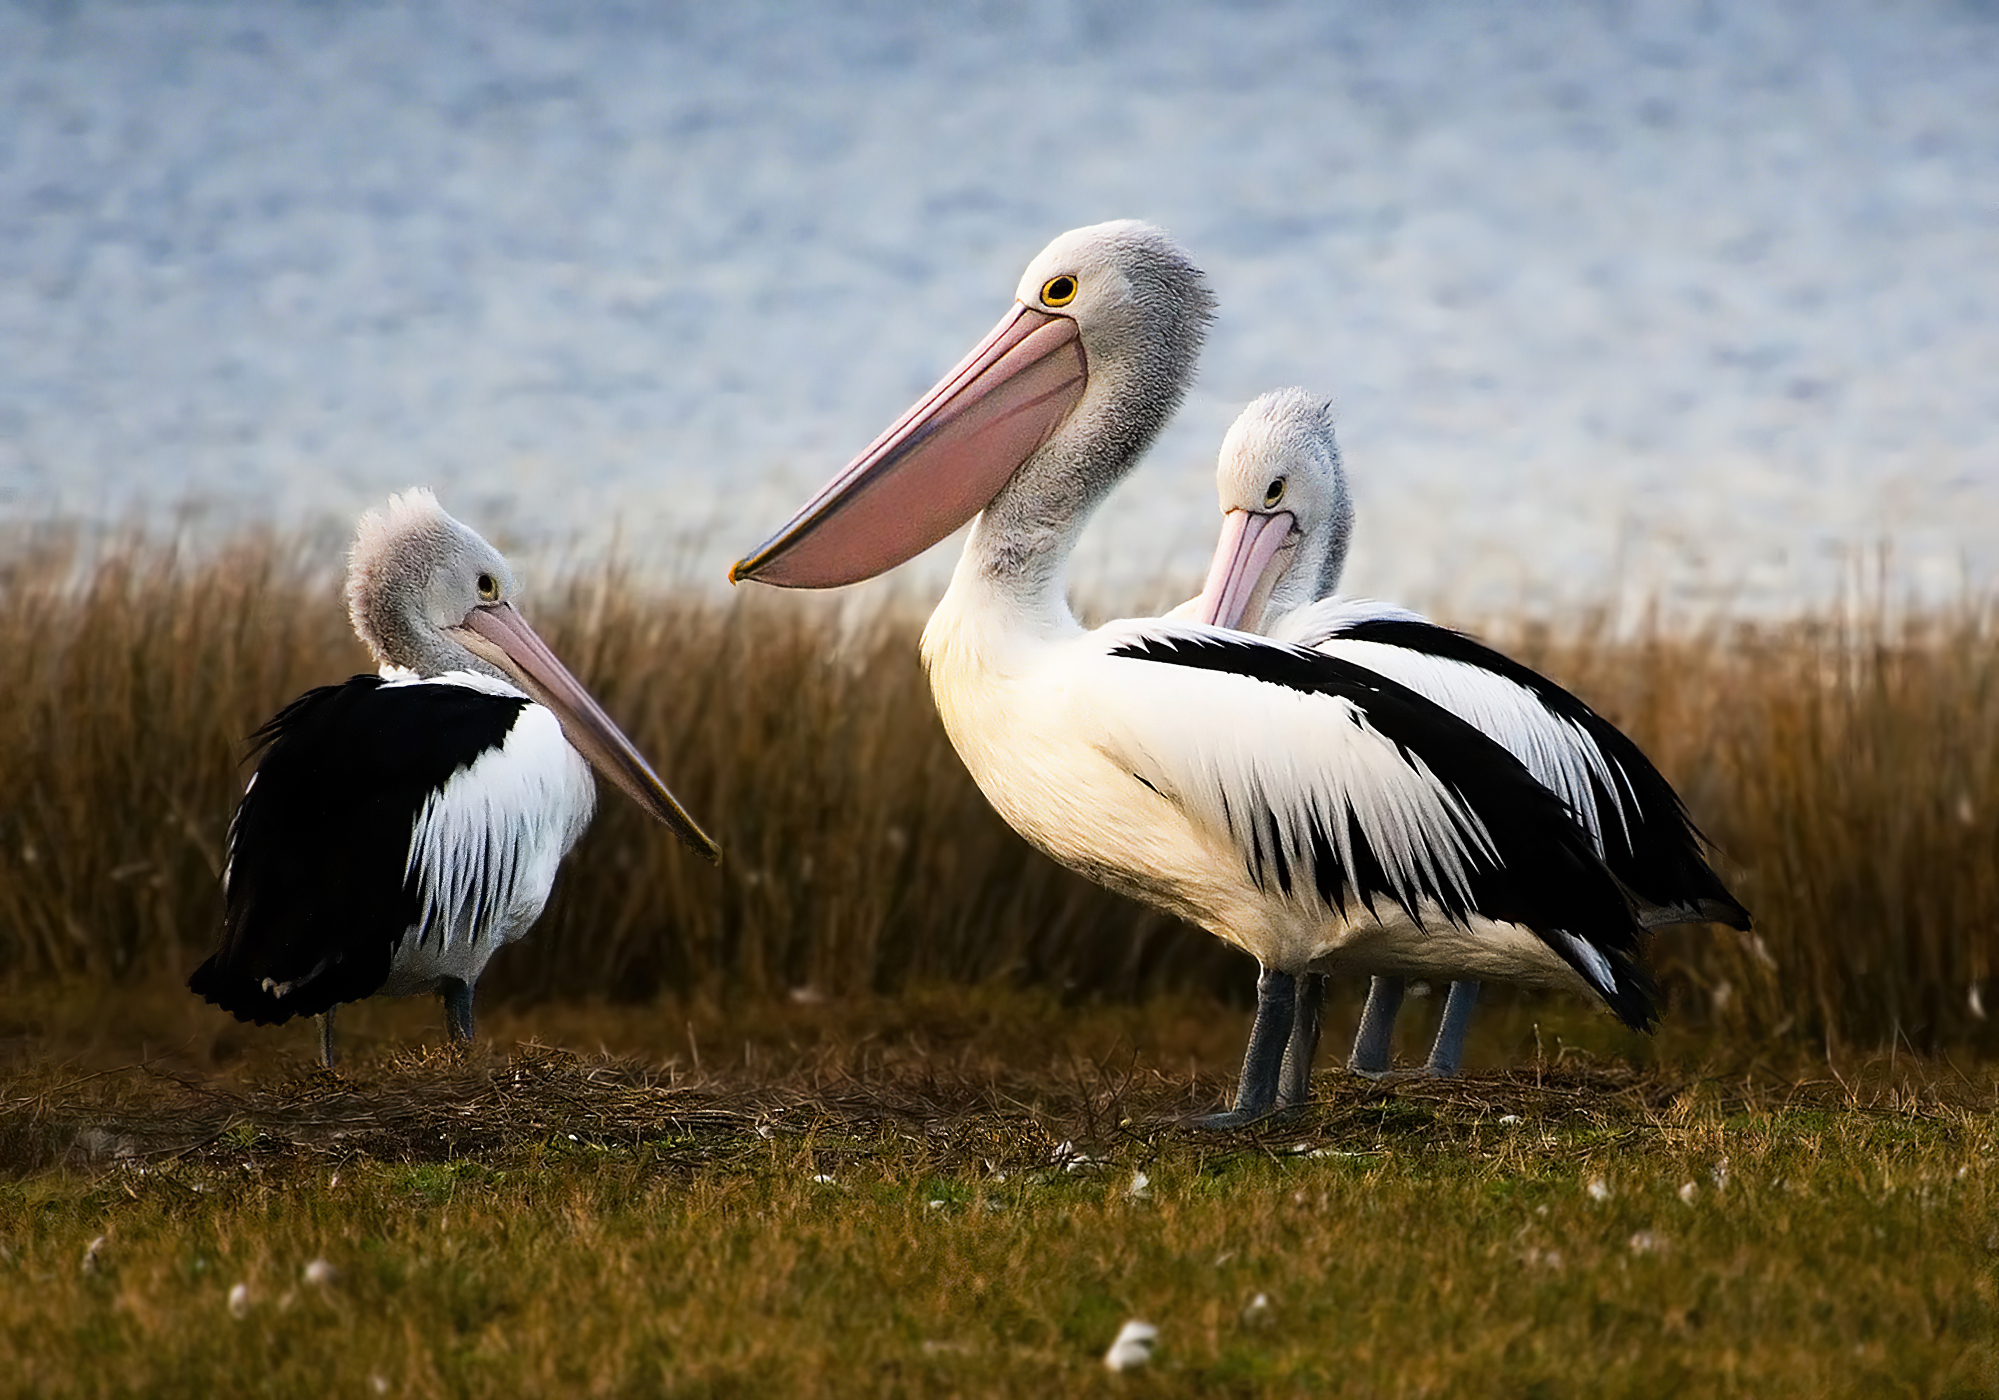 file-australian-pelicans-jpg-wikipedia-the-free-encyclopedia